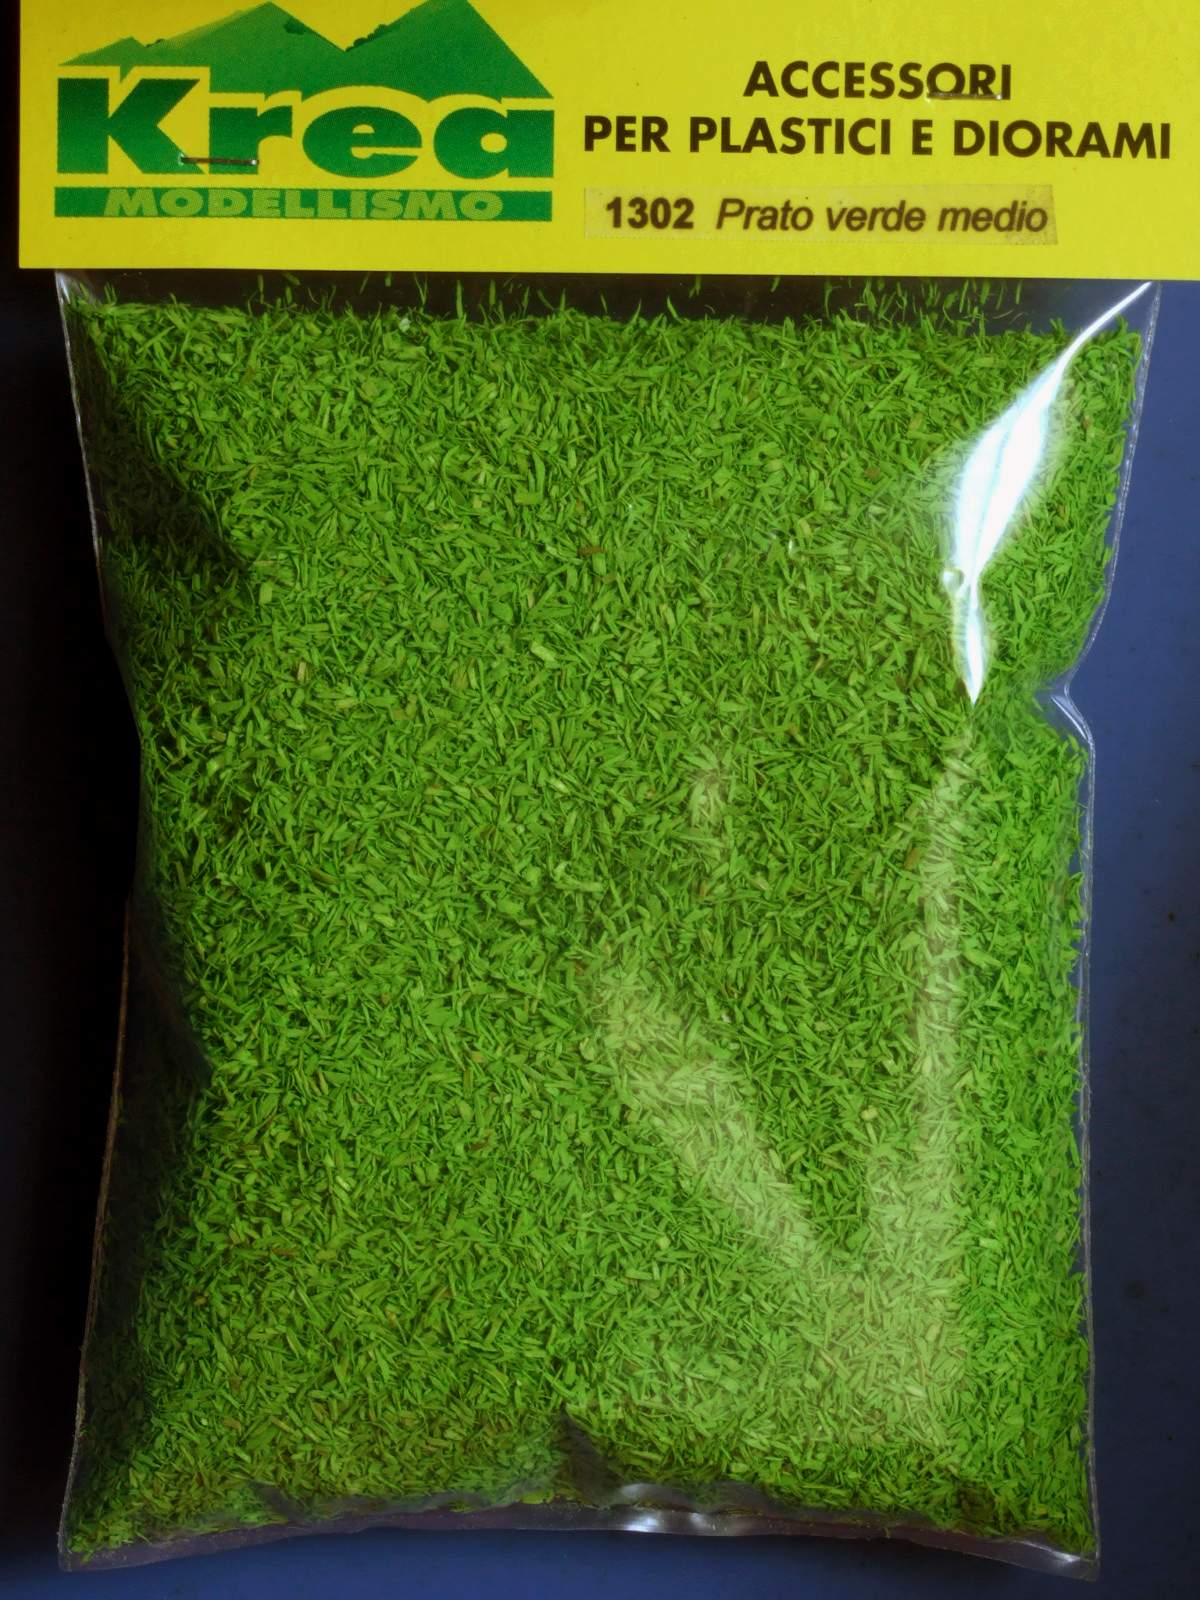 Prato turf verde medio per plastico o diorama - Krea 1302